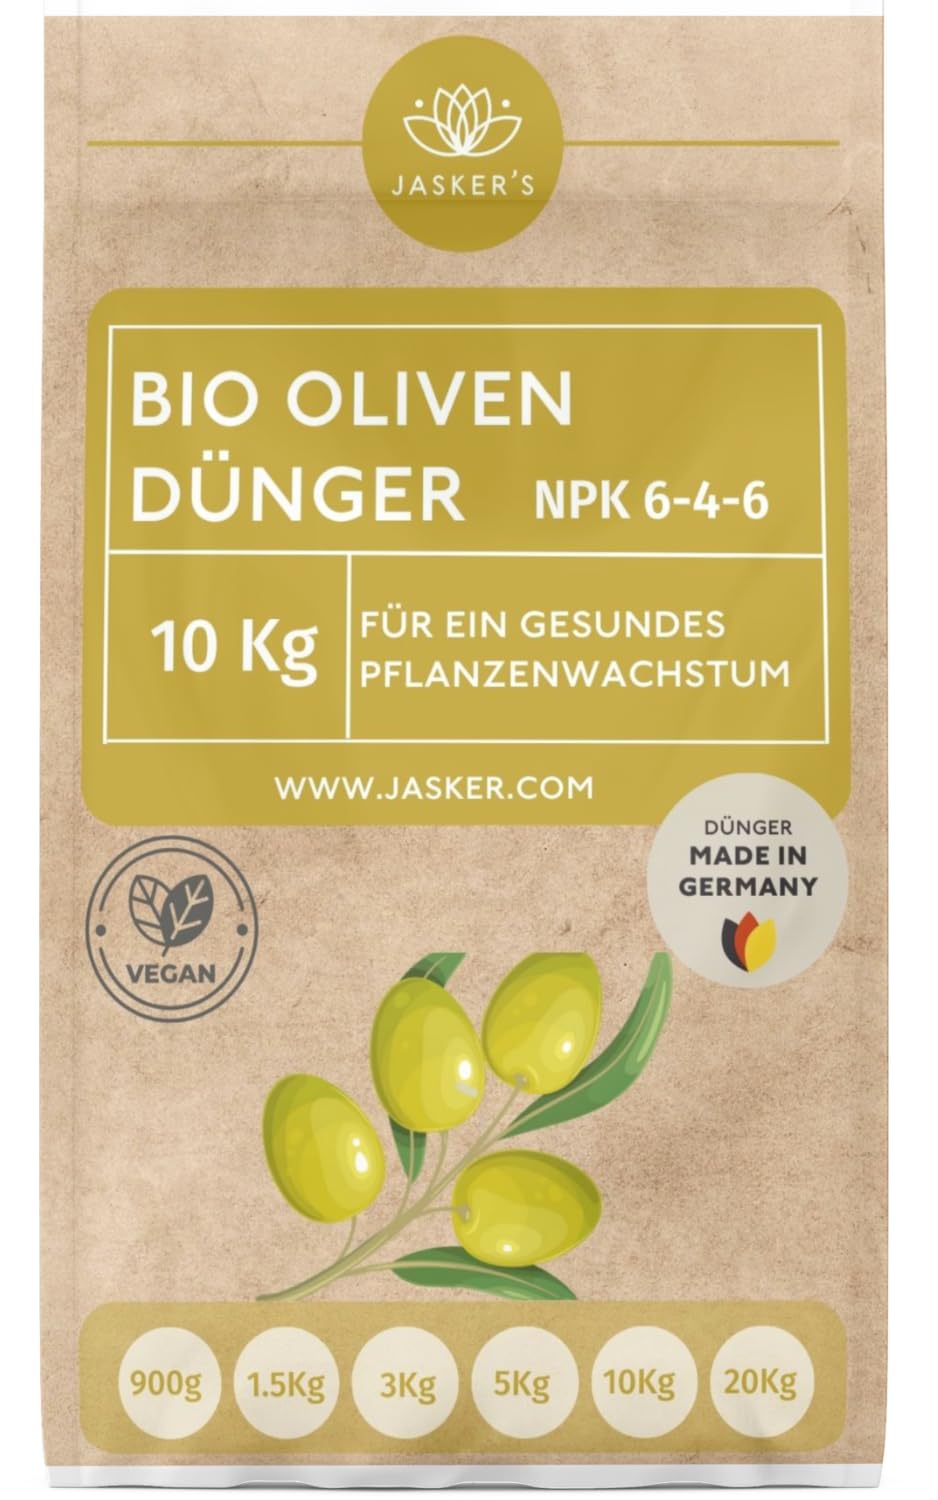 Bio Olivenbaum Dünger 10 Kg Langzeitdünger - 100% organischer Dünger für Olivenbaum - Mediterraner Dünger für Olivenbaum im Garten & Kübel - Olivenbaumdünger - Oliven Dünger